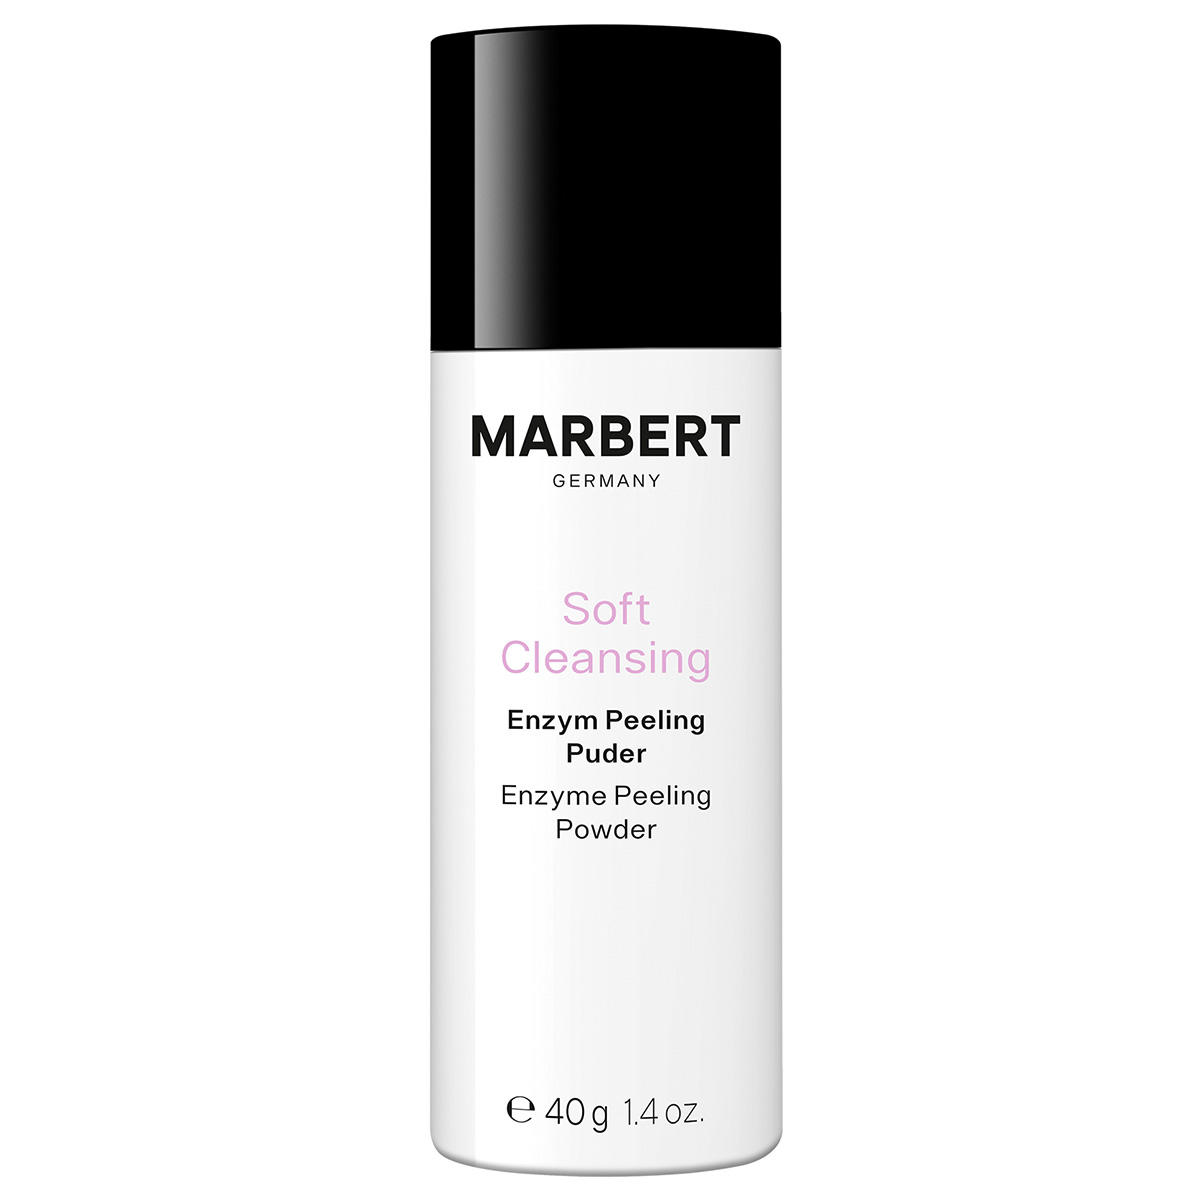 Marbert Soft Cleansing Enzym Peeling Poeder 40 g - 1